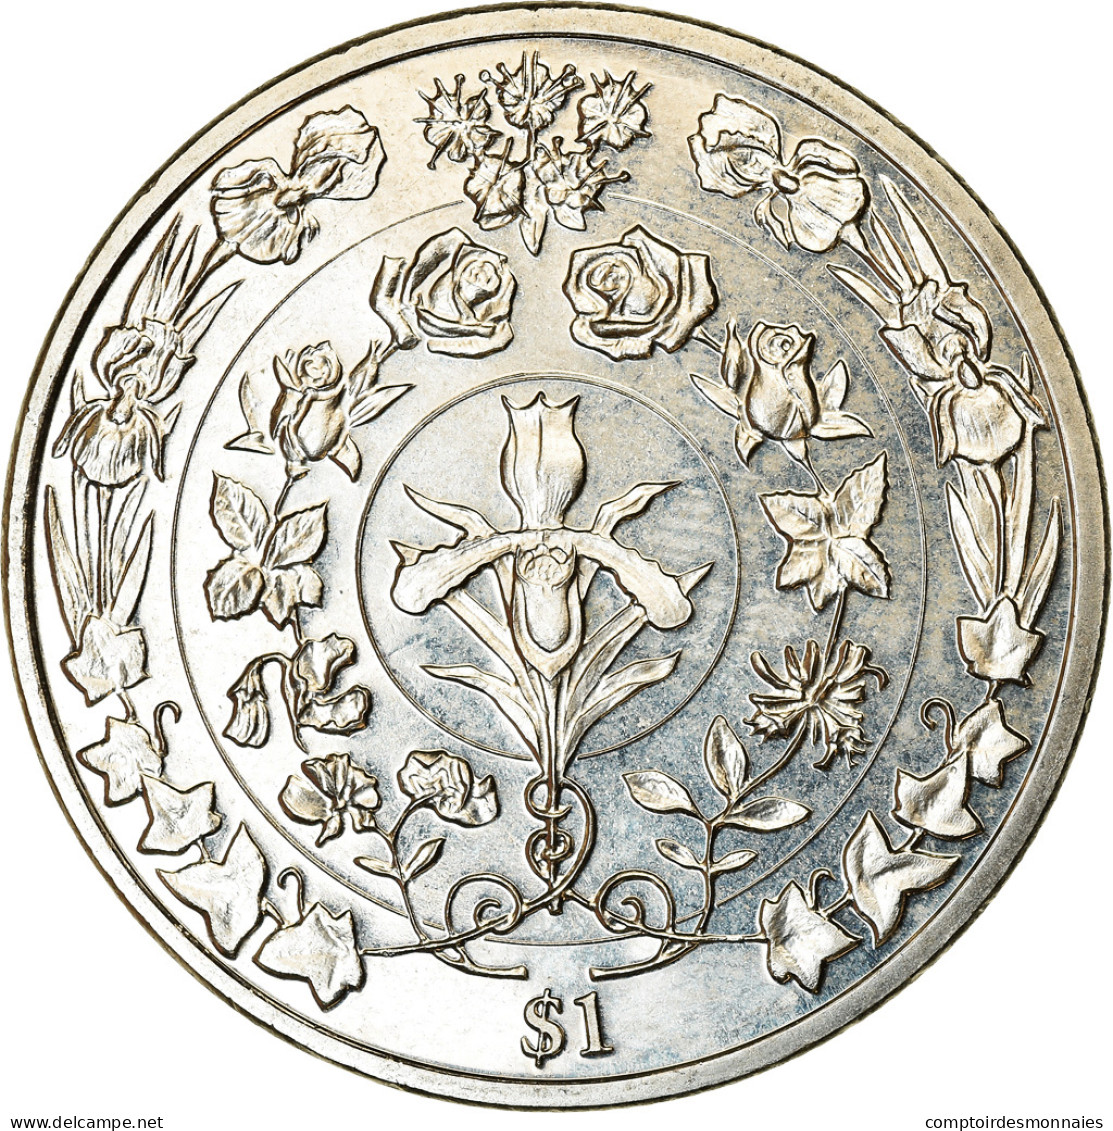 Monnaie, BRITISH VIRGIN ISLANDS, Dollar, 2017, Franklin Mint, Reine Elizabeth - - Isole Vergini Britanniche